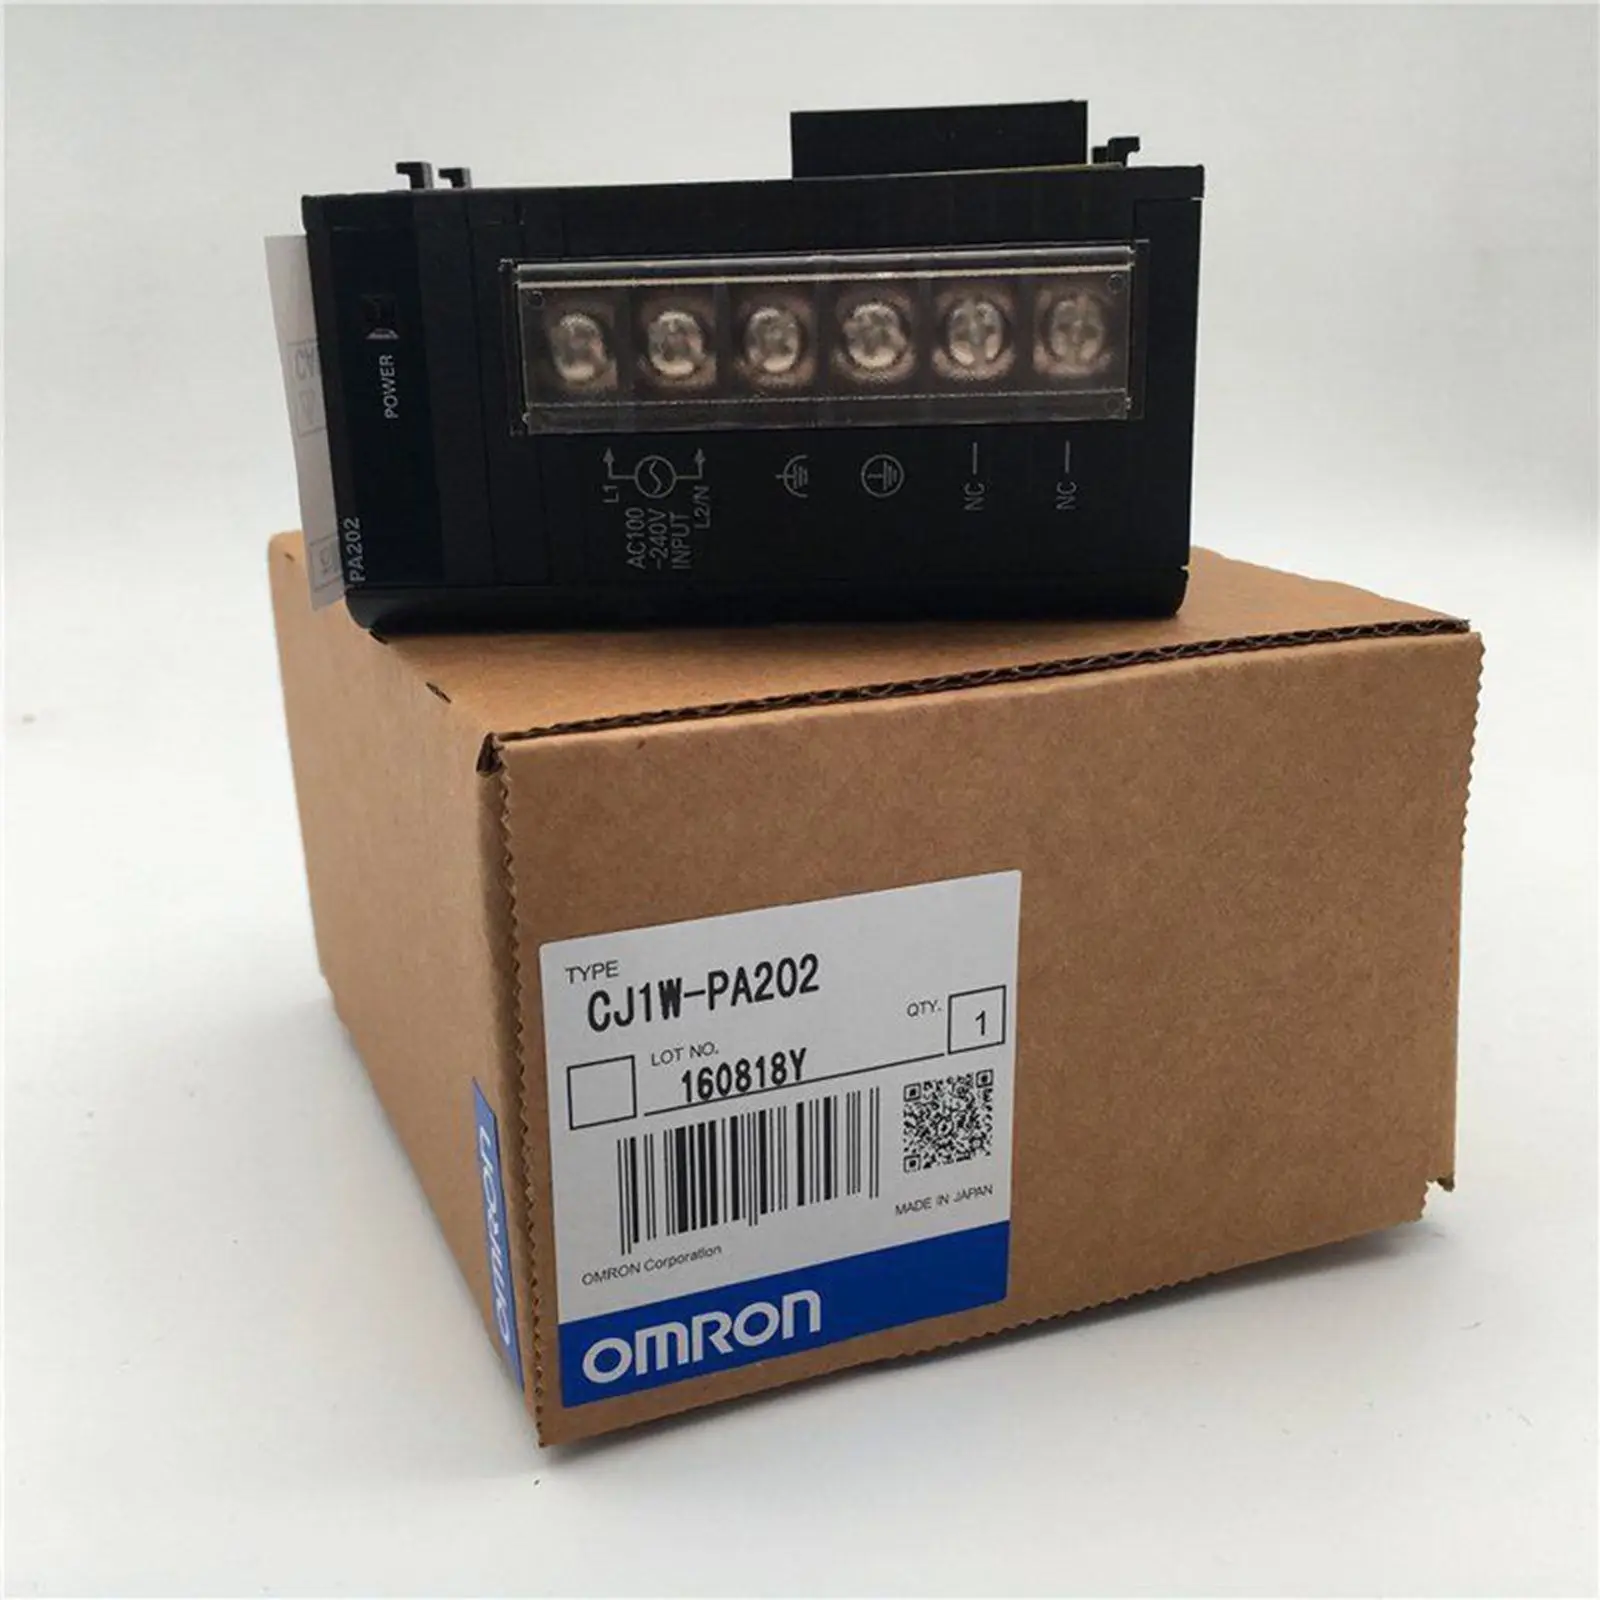 100%  new original  CJ1W-PA202 omron power supply unit  cj1w